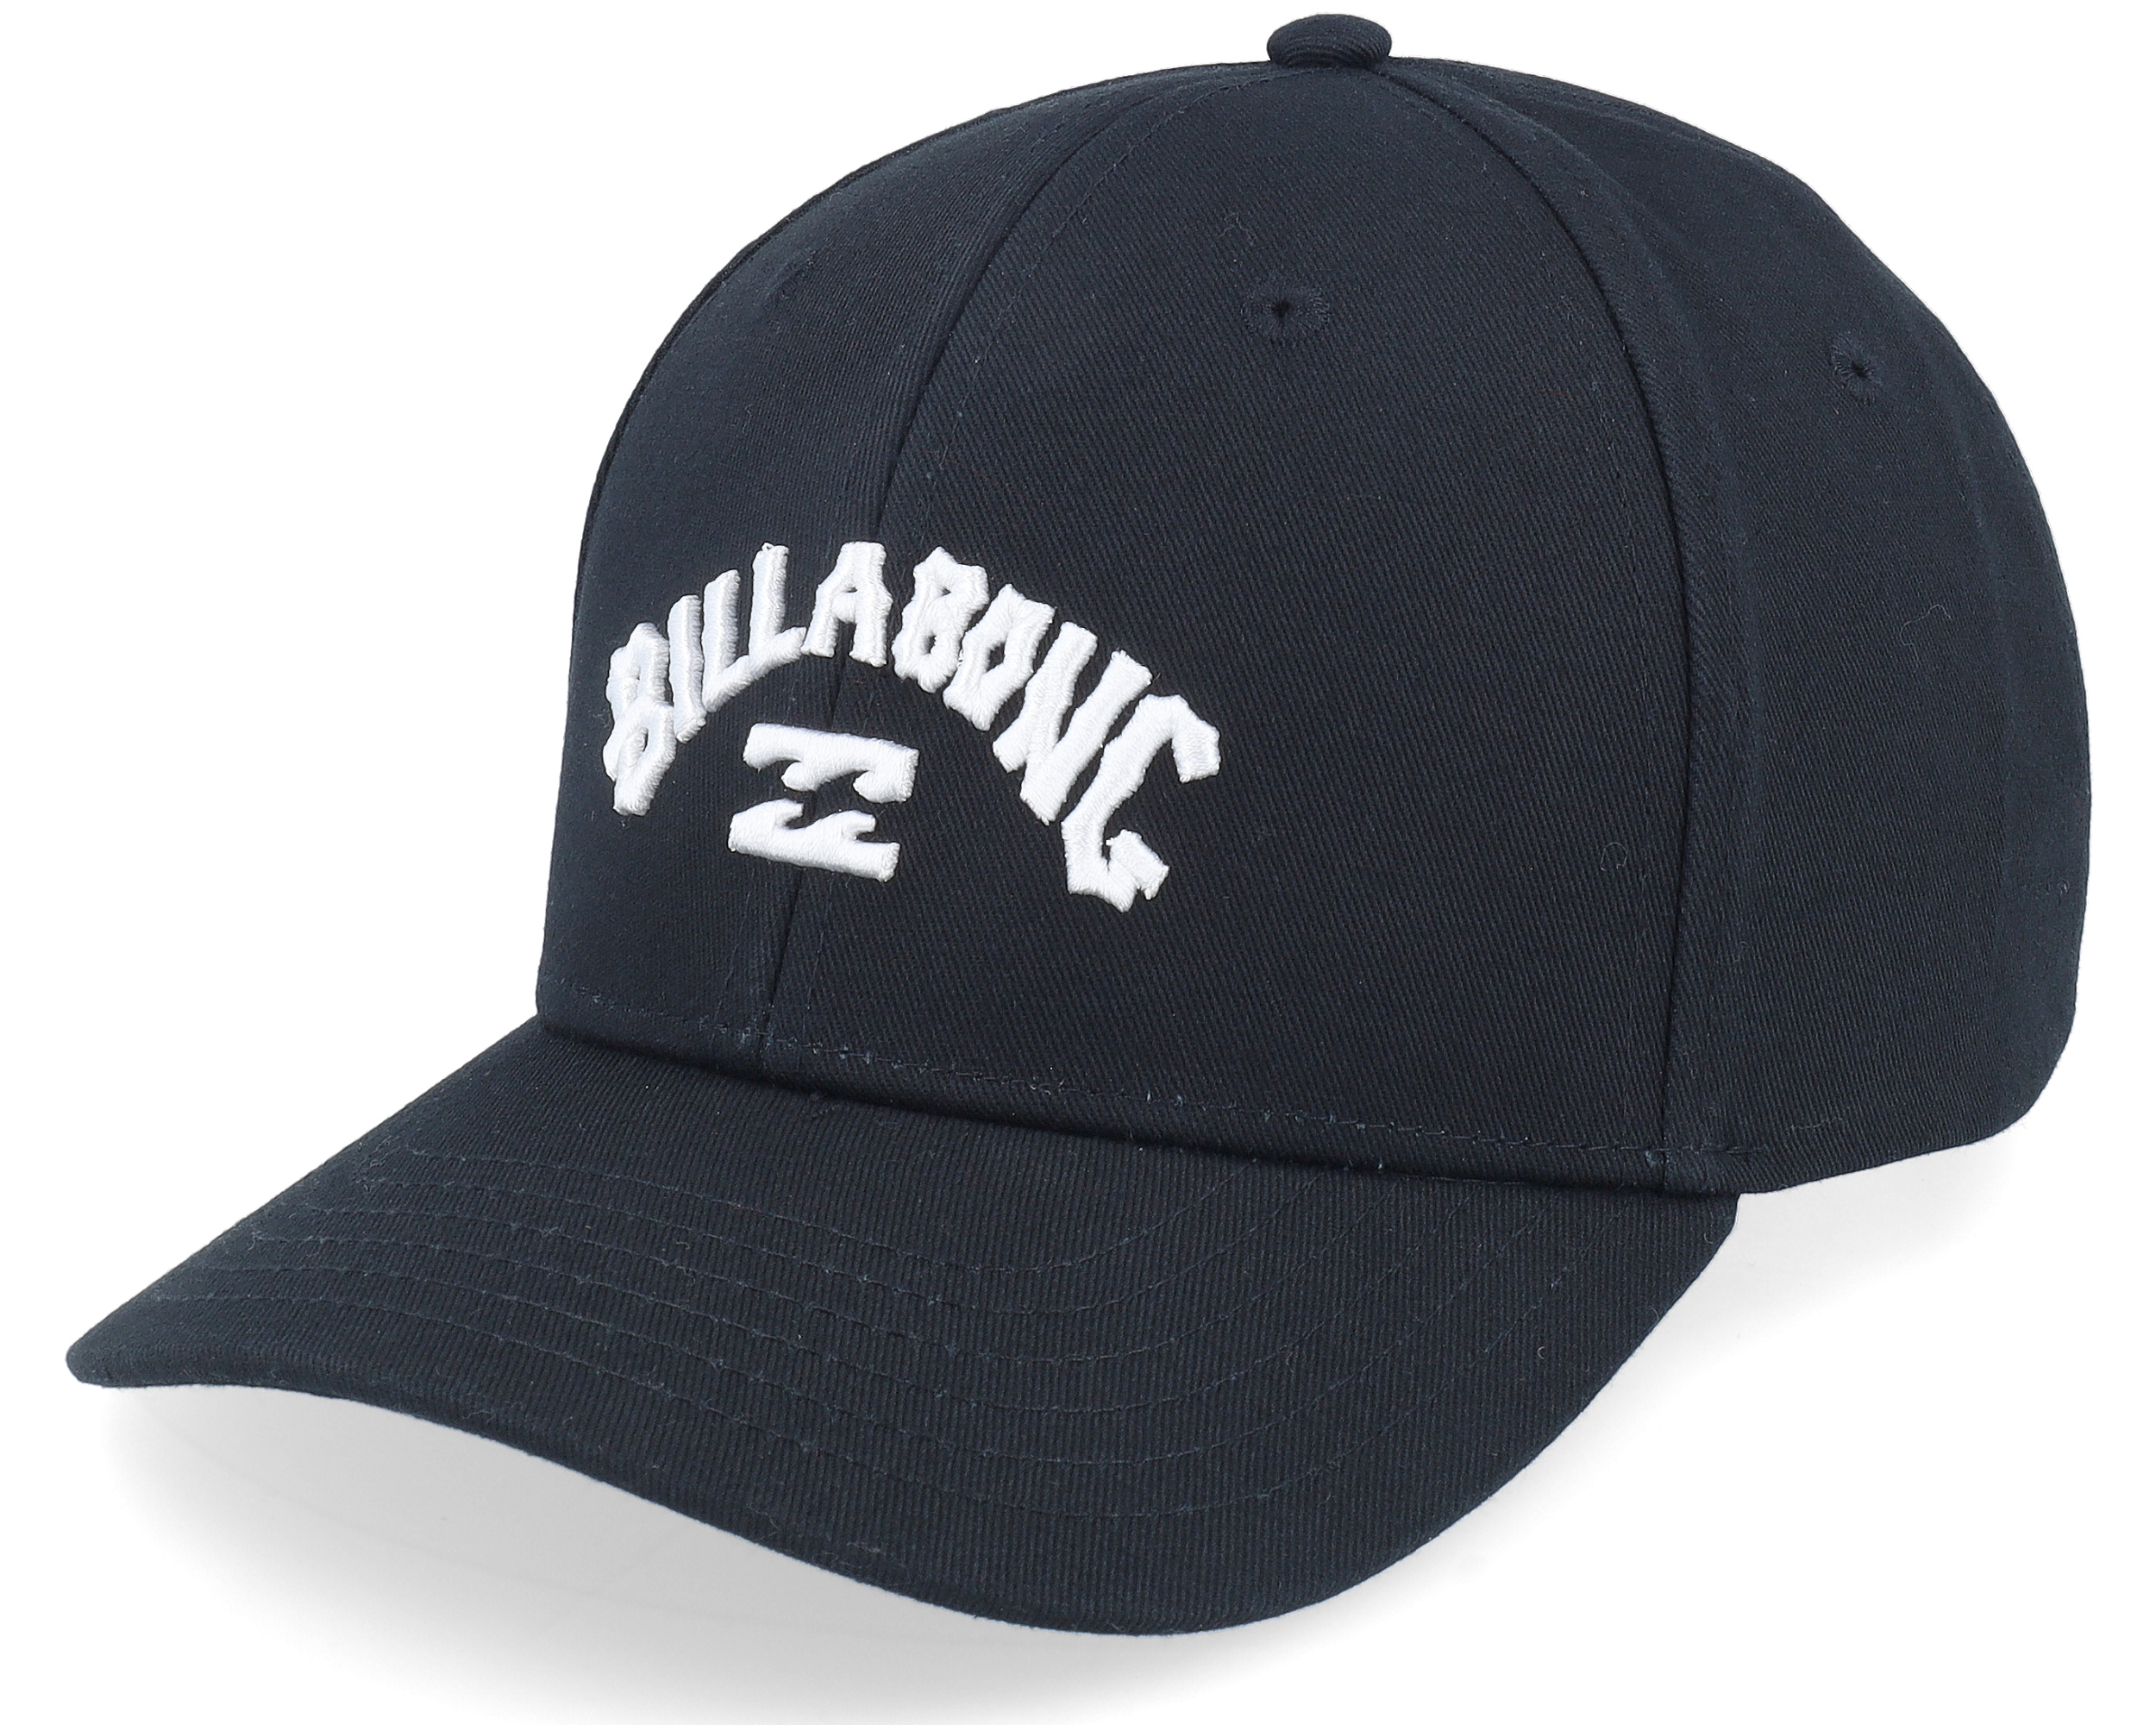 Arch Black Adjustable - Billabong cap